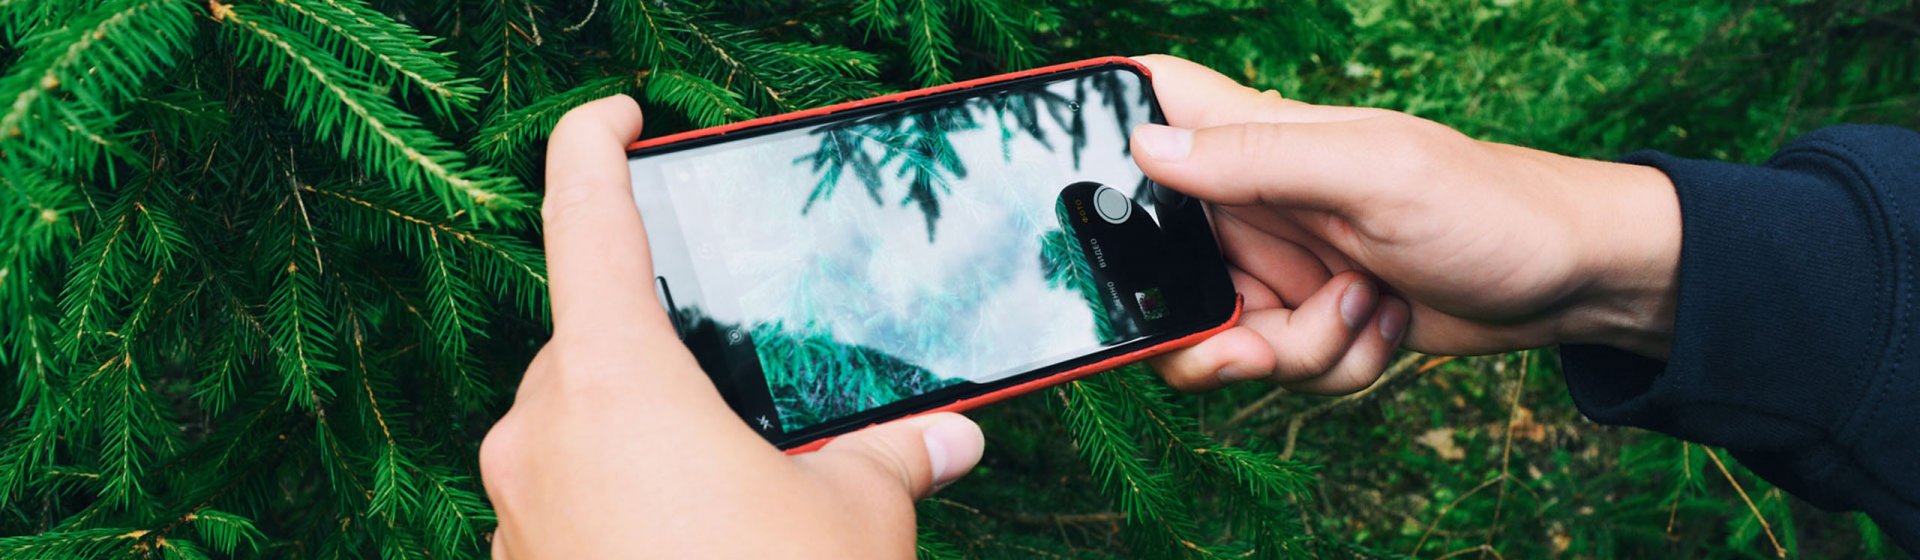 Nadelbaum wird zur Bestimmung mit Smartphone fotografiert